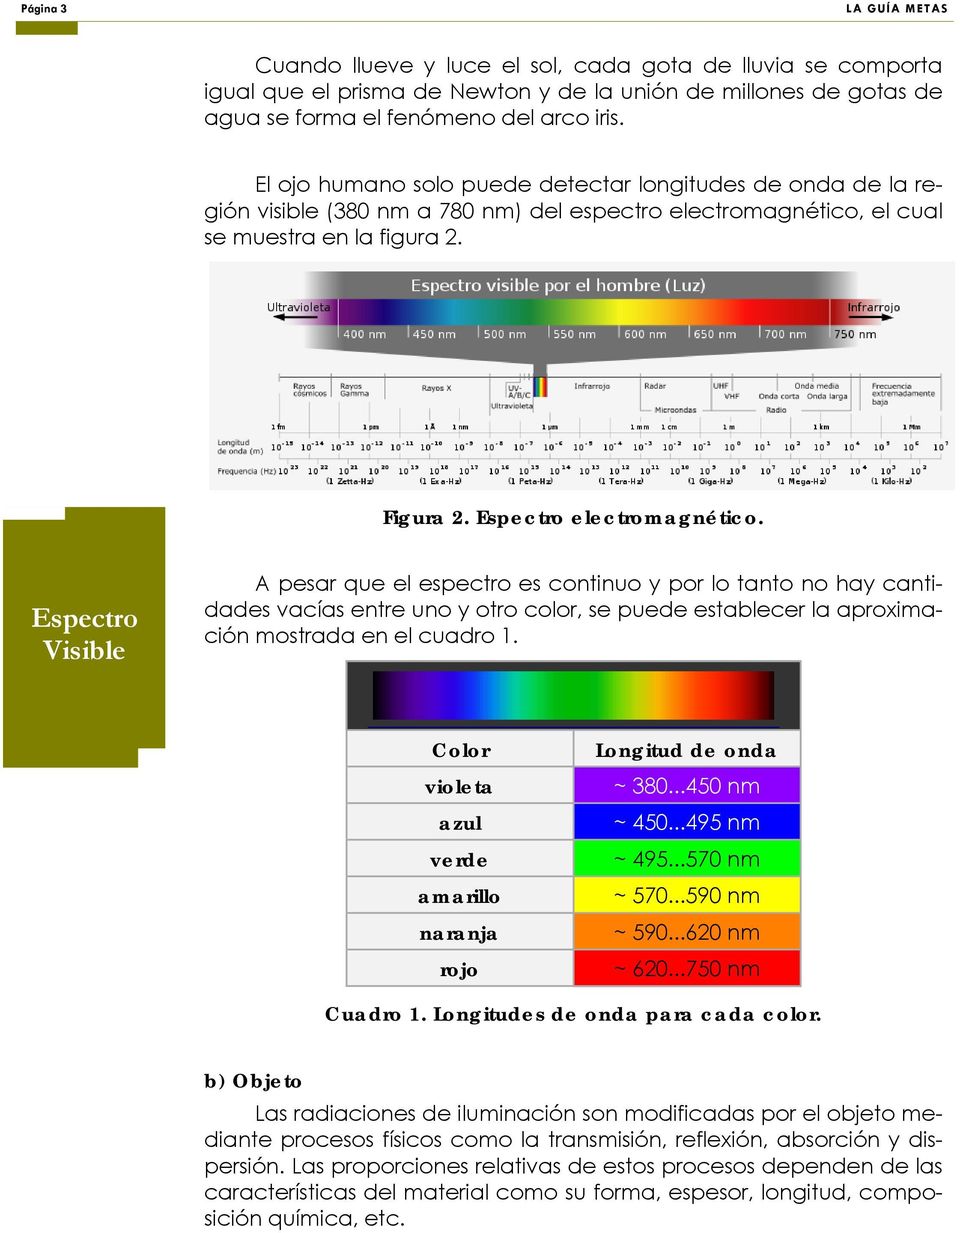 Espectro Visible A pesar que el espectro es continuo y por lo tanto no hay cantidades vacías entre uno y otro color, se puede establecer la aproximación mostrada en el cuadro 1.